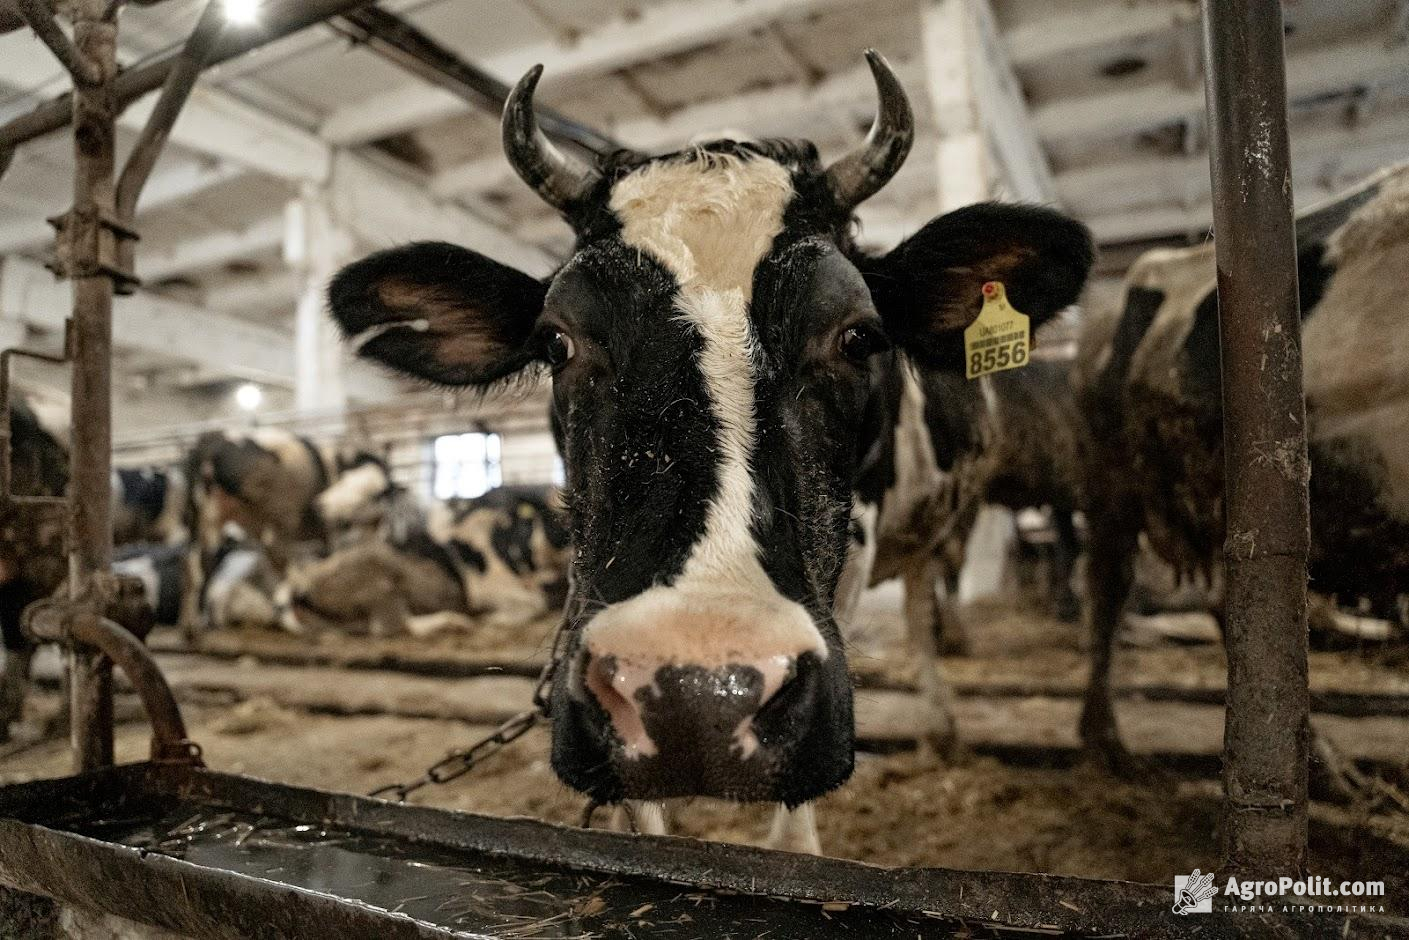 Нардепи ухвалили 3 важливі законопроекти щодо біобезпеки тварин і харчової продукції